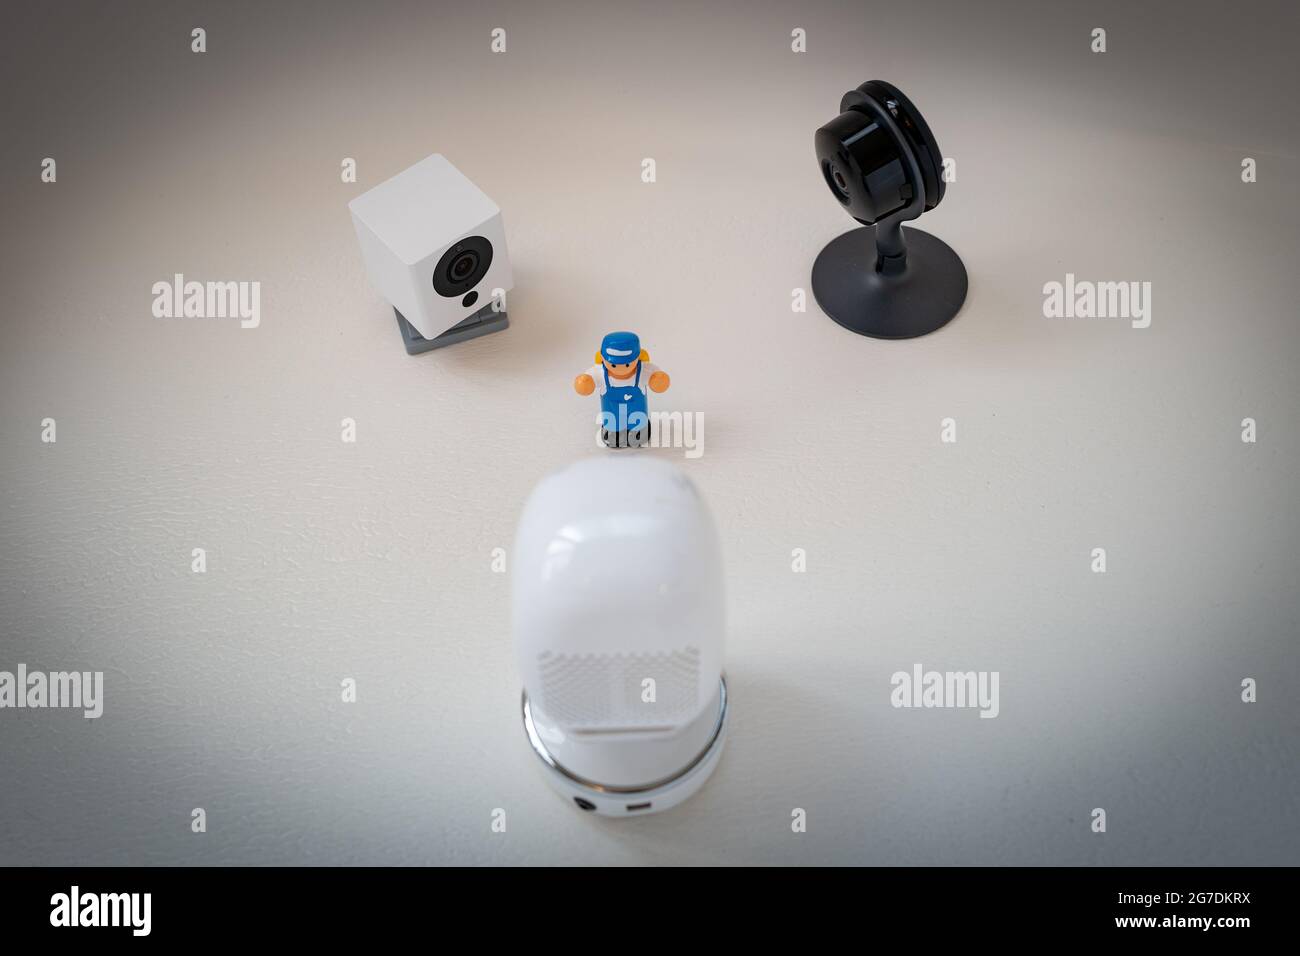 Immagine illustrativa di un giocattolo di plastica per bambini circondato da telecamere di sicurezza di Google Nest, Simcam e Wyze su sfondo bianco, che suggerisce la sorveglianza di massa, a San Ramon, California, novembre 20, 2020. () Foto Stock